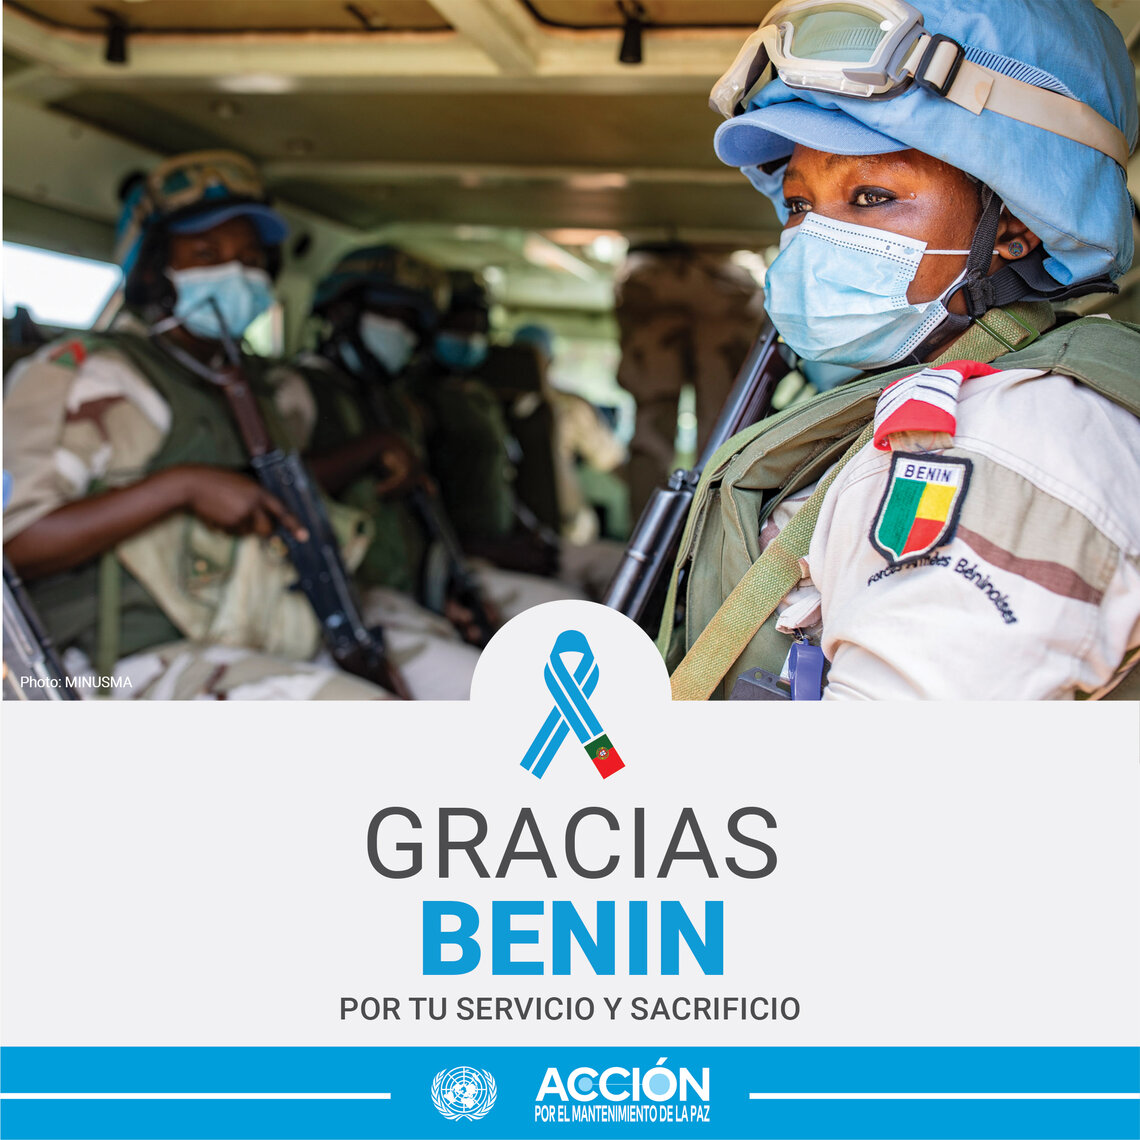 Tarjeta de una casco azul de Benin con otros compañeros y el texto: Gracias, Benin, por tu servicio y sacrificio.